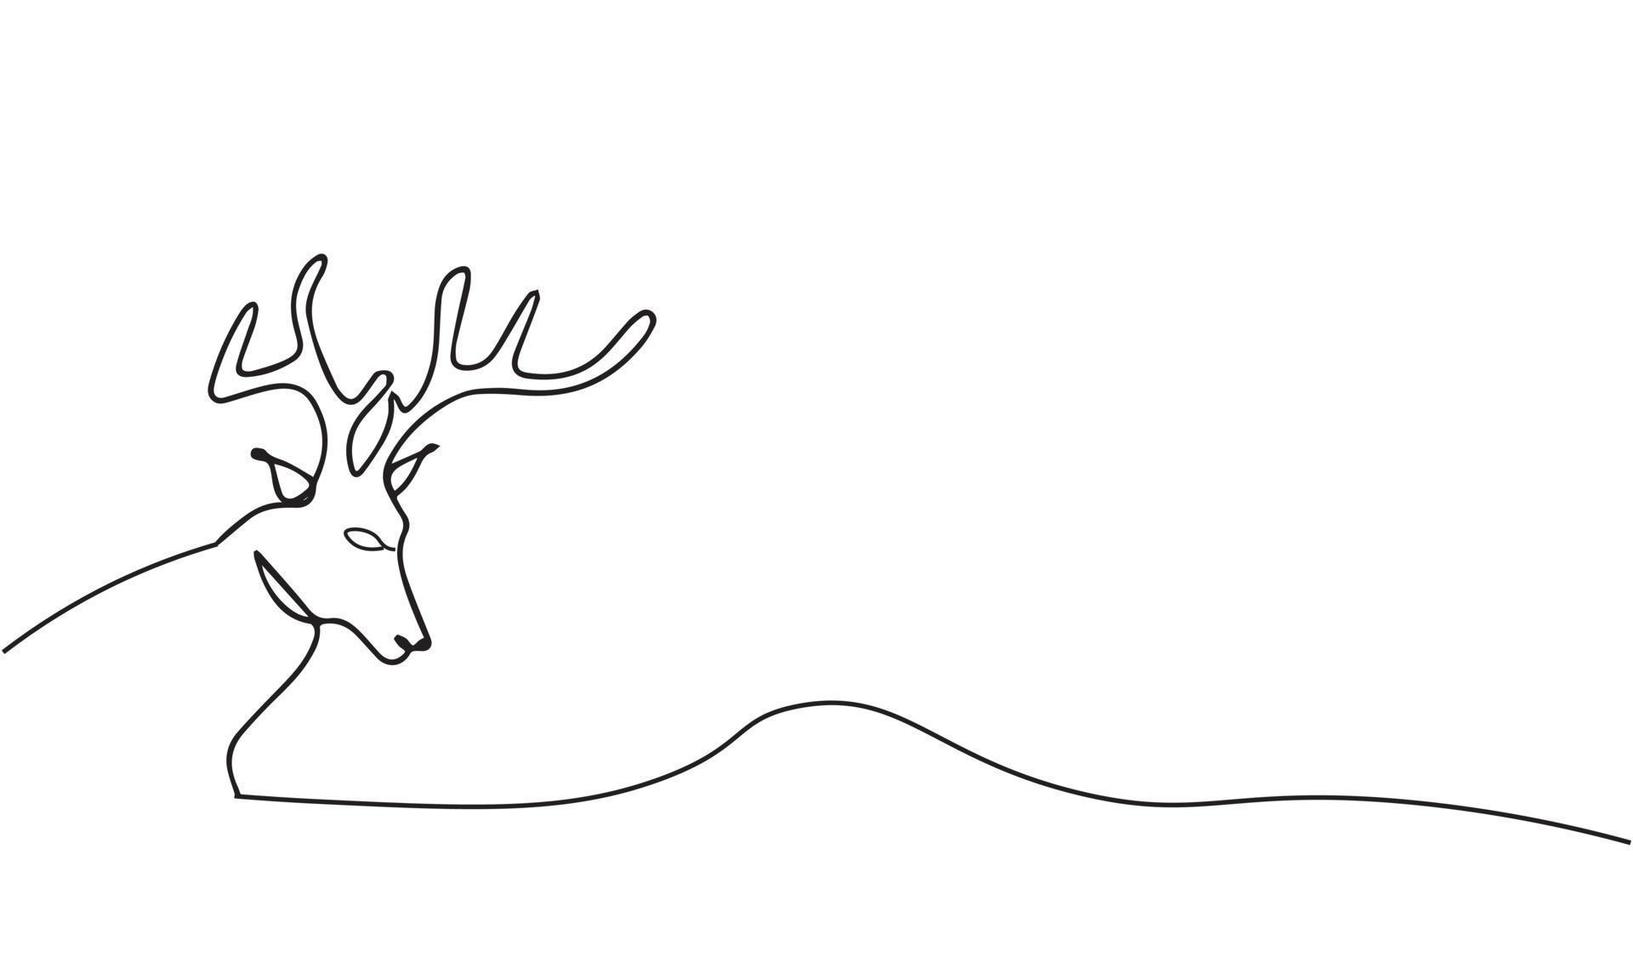 kontinuierliche einzeilige zeichnung von hirschen mit. vektorillustration des tierischen hirschtierthemas vektor